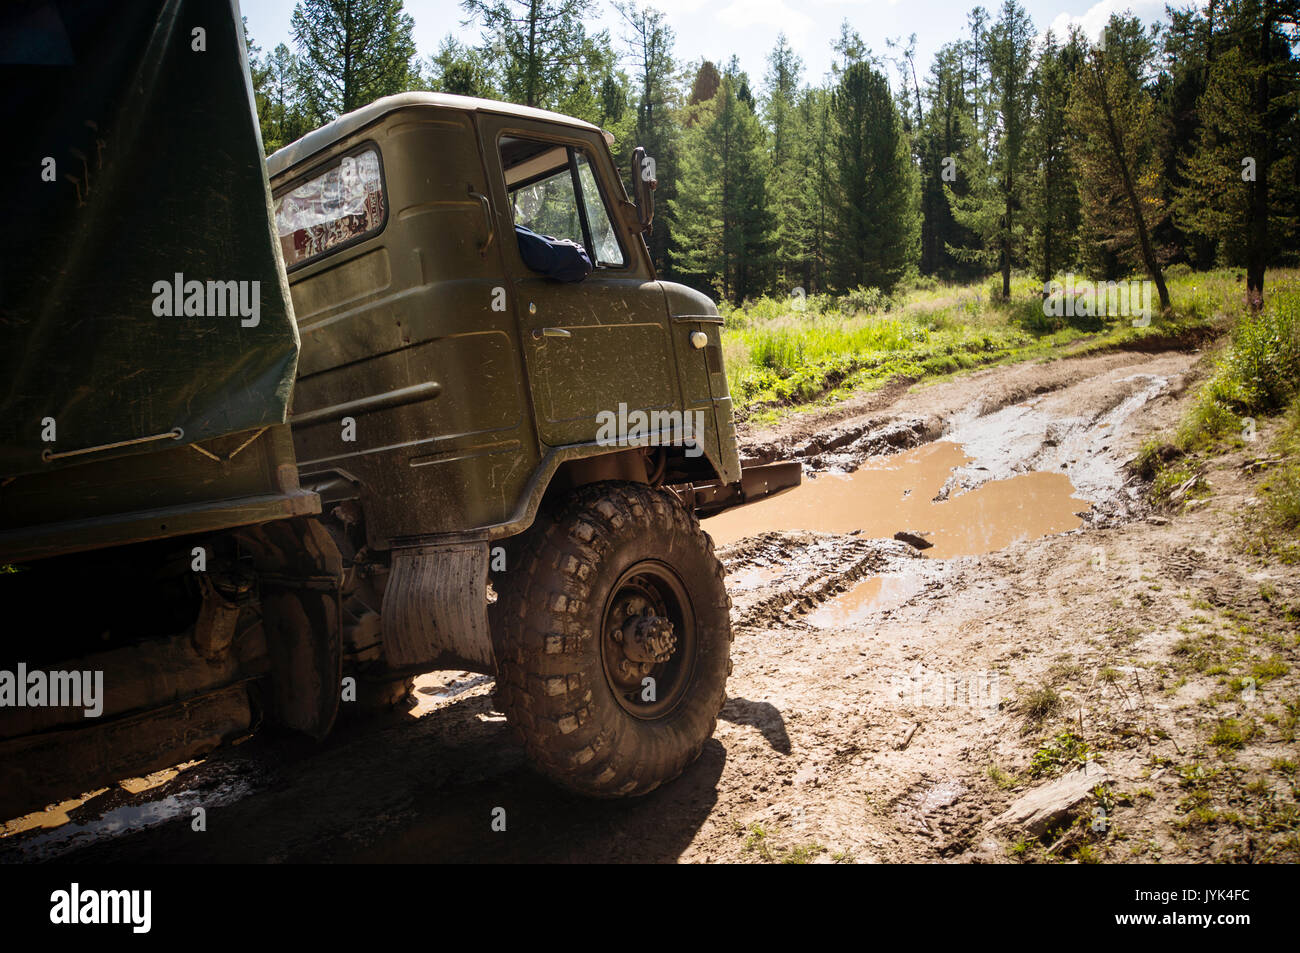 Schwere leistungsstarke Lkw Geländewagen mit Off-road-Räder, die Hindernisse in schwierigem Gelände überwinden. Russische militärische Ausrüstung in Aktion. Stockfoto